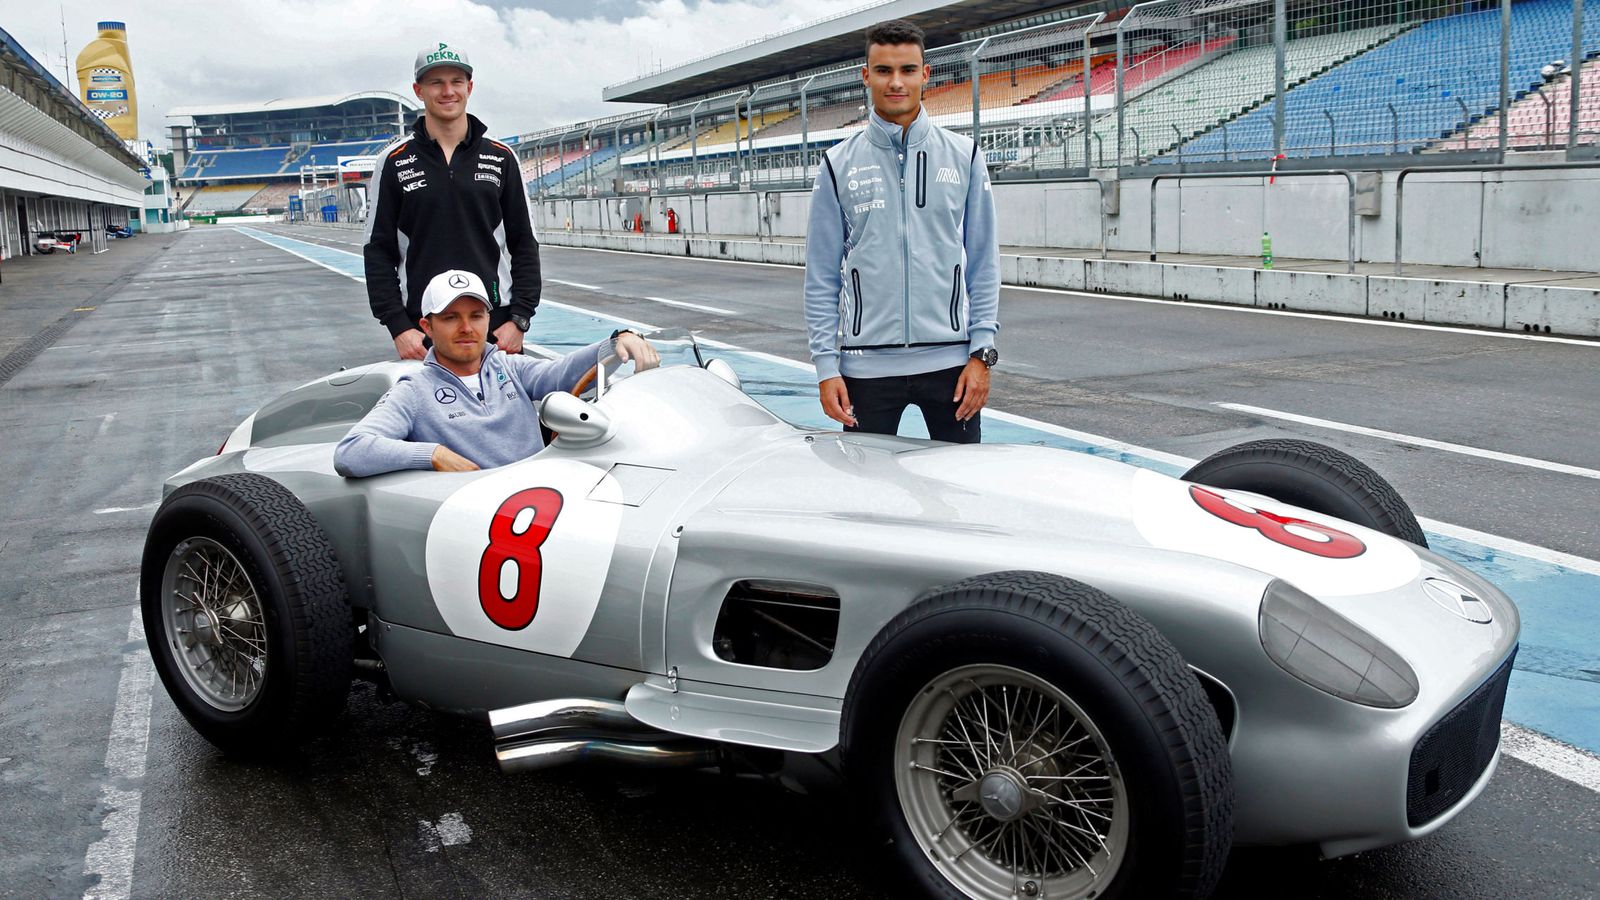 Foto: Hulkenberg, Rosberg y Wehrlein, los alemanes que correrán como pilotos locales en el GP de Alemania de Fórmula 1.